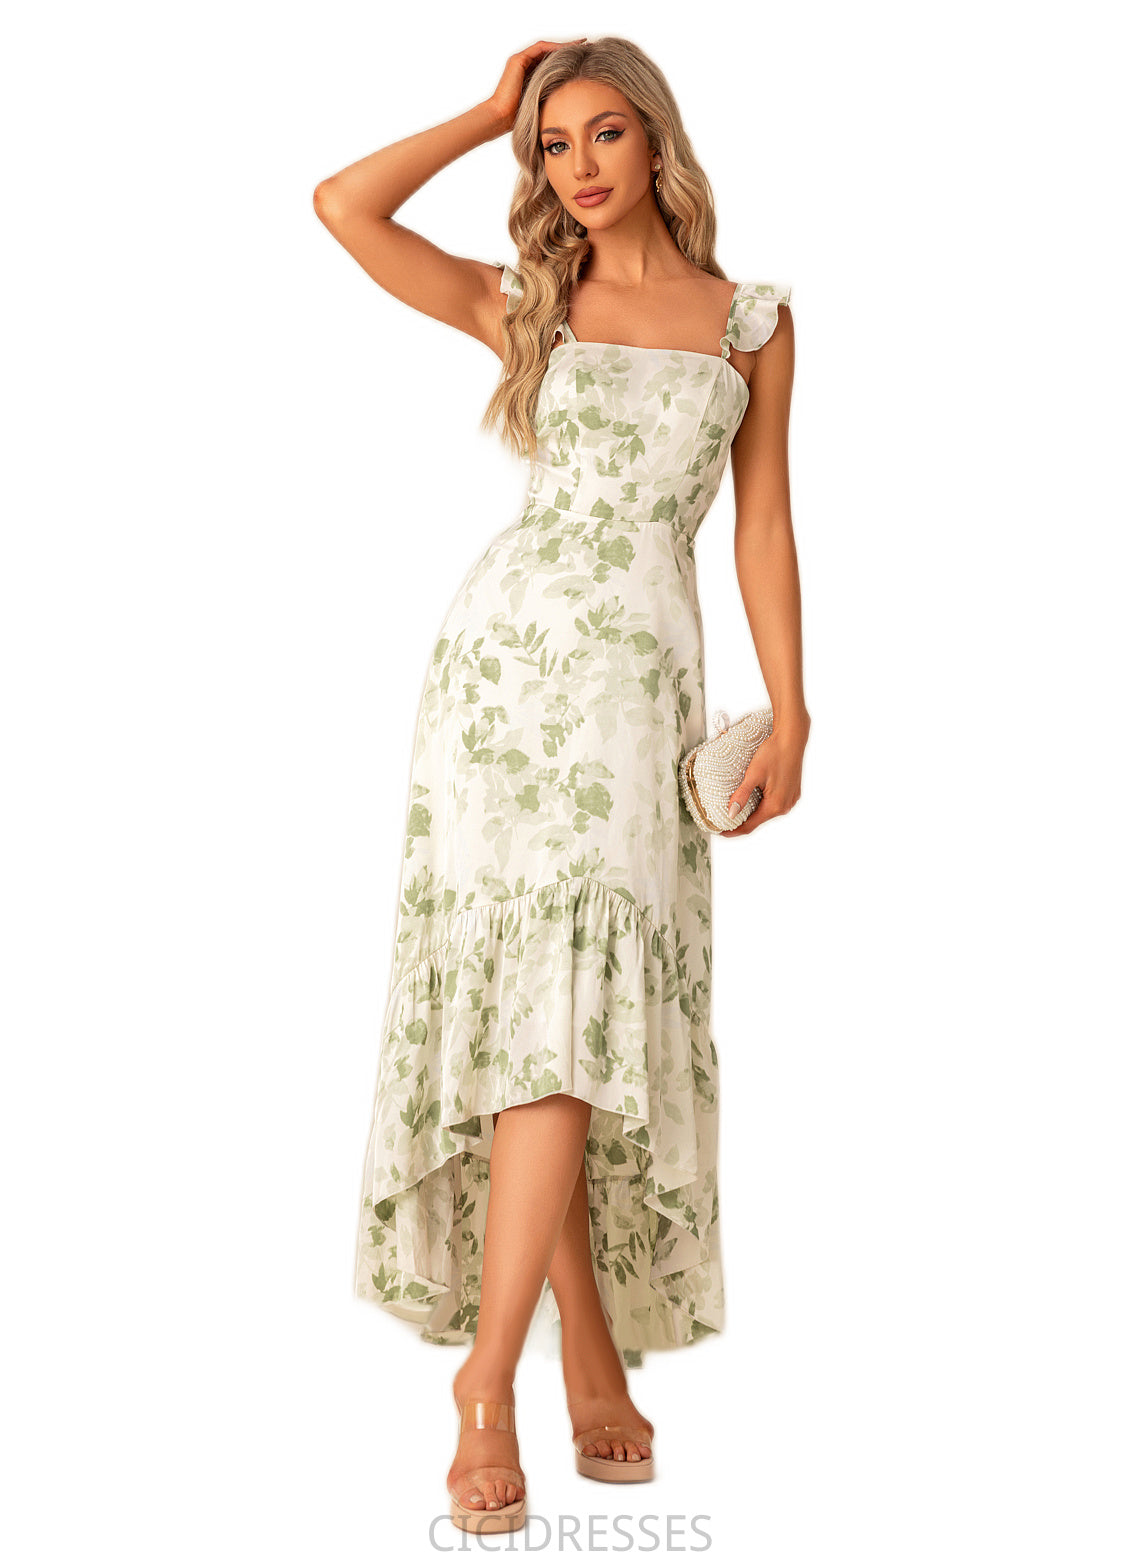 Tabitha A-line Straight Floor-Length Asymmetrical Satin Bridesmaid Dress With Ruffle Floral Print CIC8P0022571